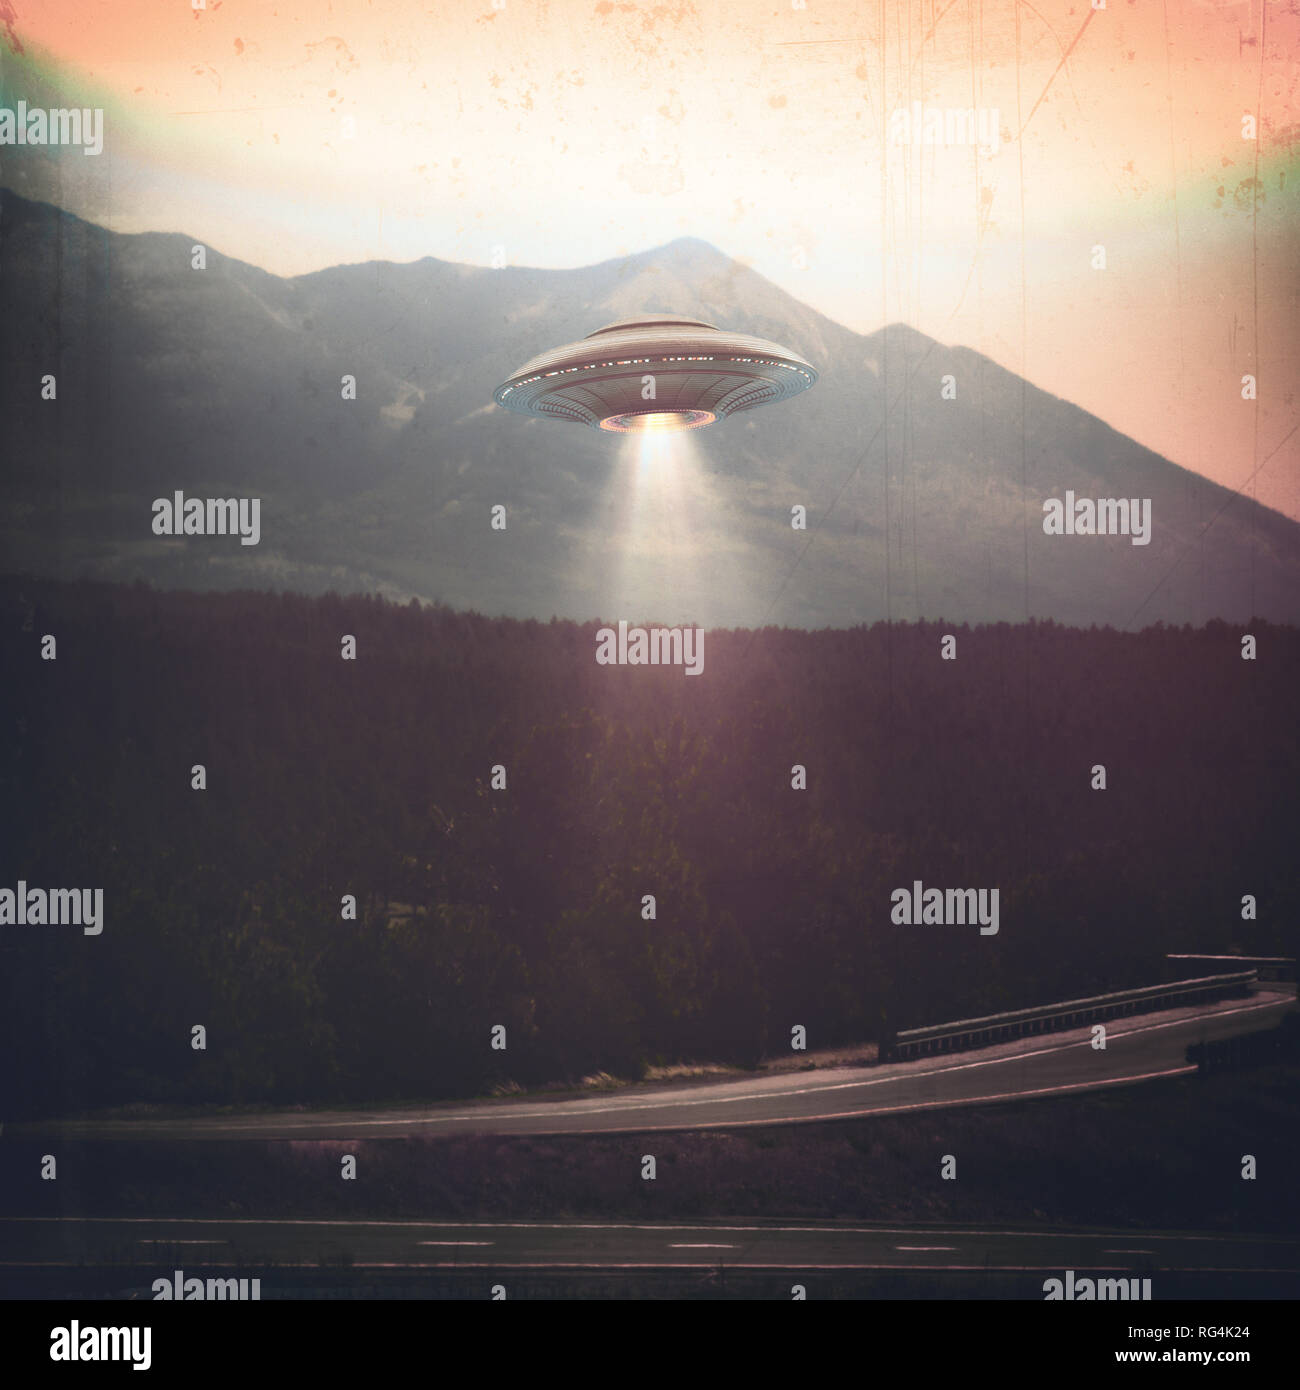 Oggetto Volante non Identificato UFO. Il vecchio stile foto con ISO elevata rumorosità e sporcizia con graffi nel tempo. Foto Stock